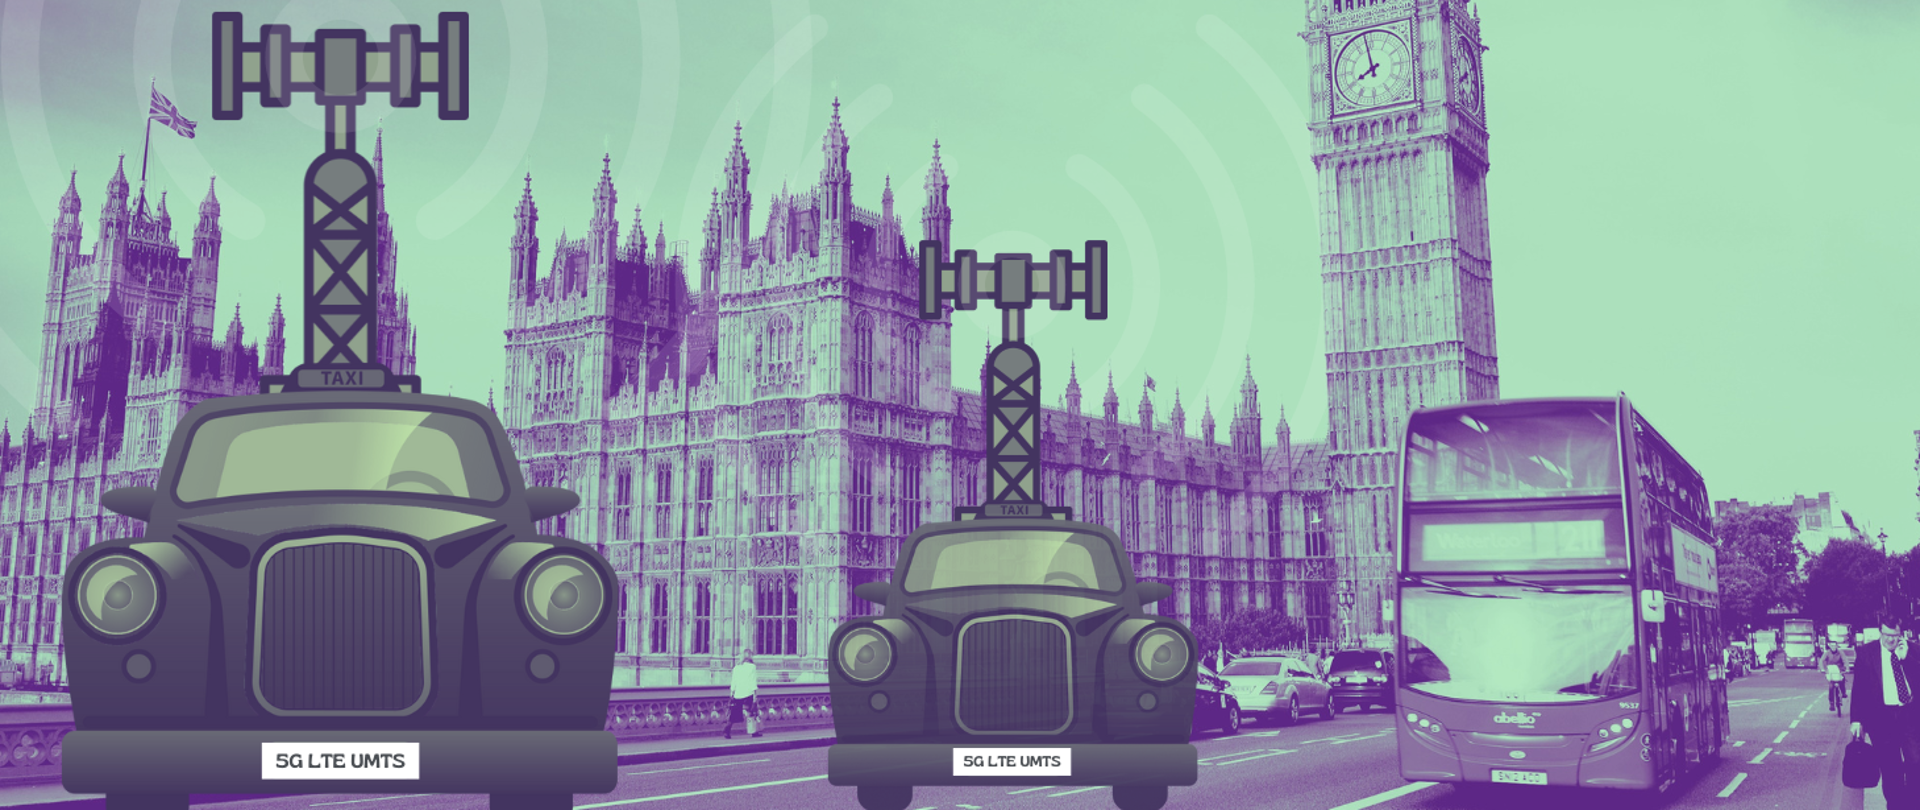 Na ilustracji zdjęcie zdjęcie londyńskiej ulicy z widokiem brytyjskiego parlamentu i wieży z zegarem Big Ben. Na jego tle widać dwie czarne, londyńskie taksówki wiozące na dachach maszty antenowe.